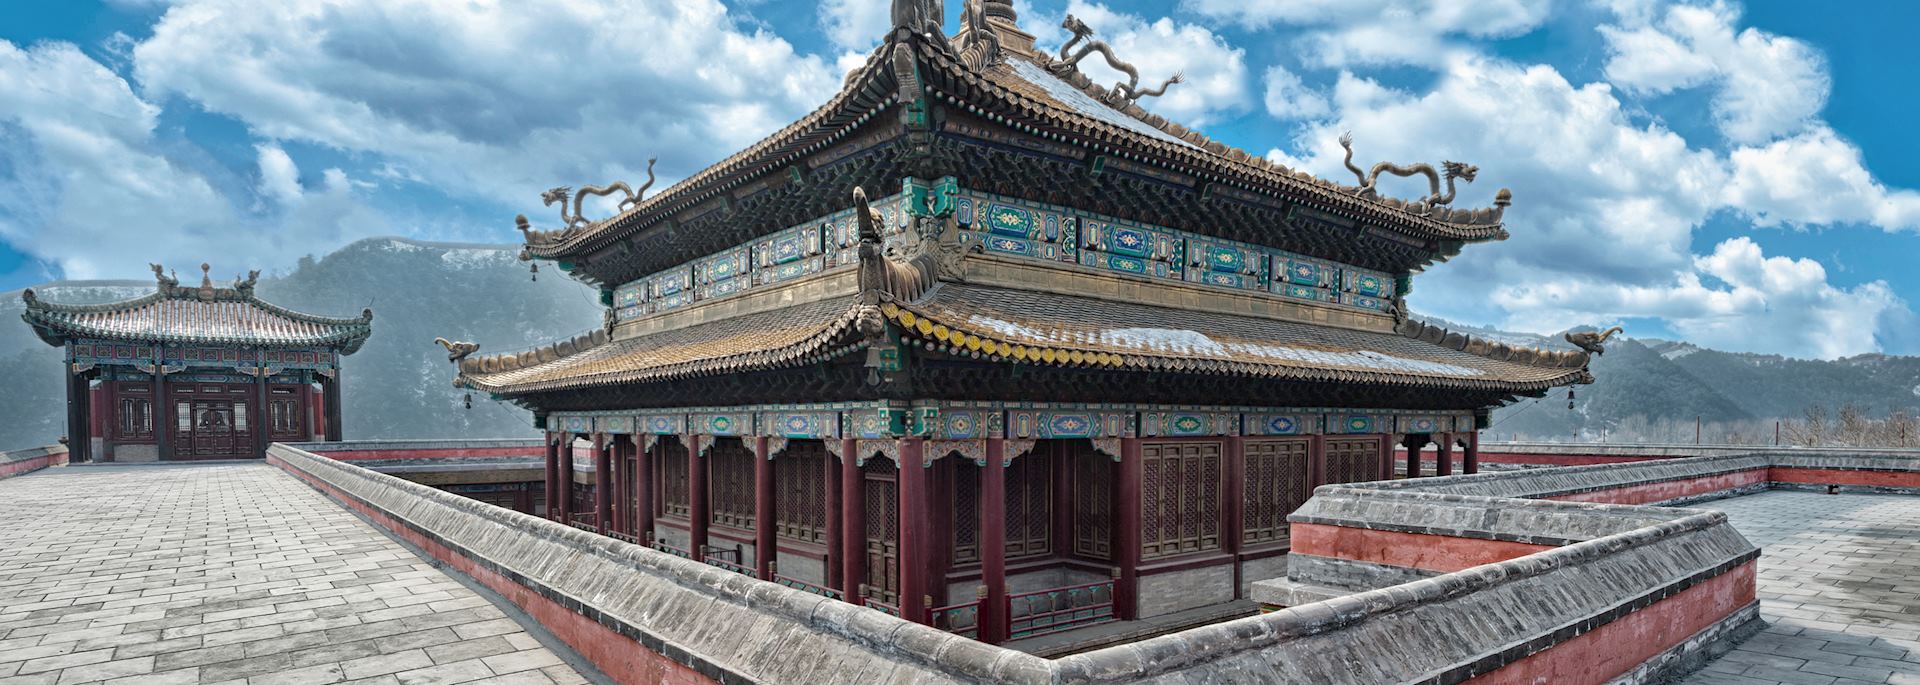 Chinese palace, Chengde